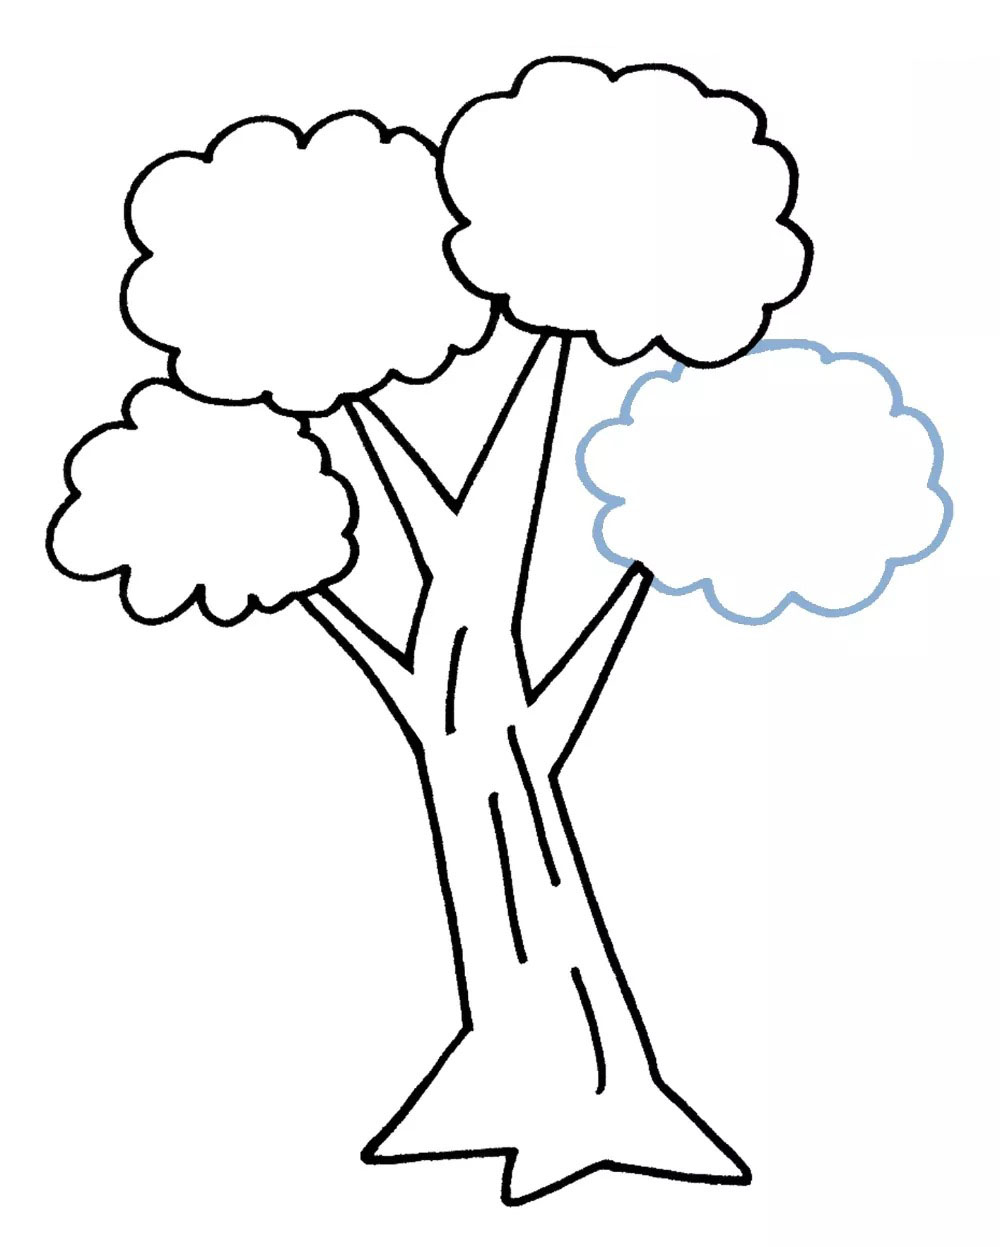 Baum zeichnen einfach - Schritt 9